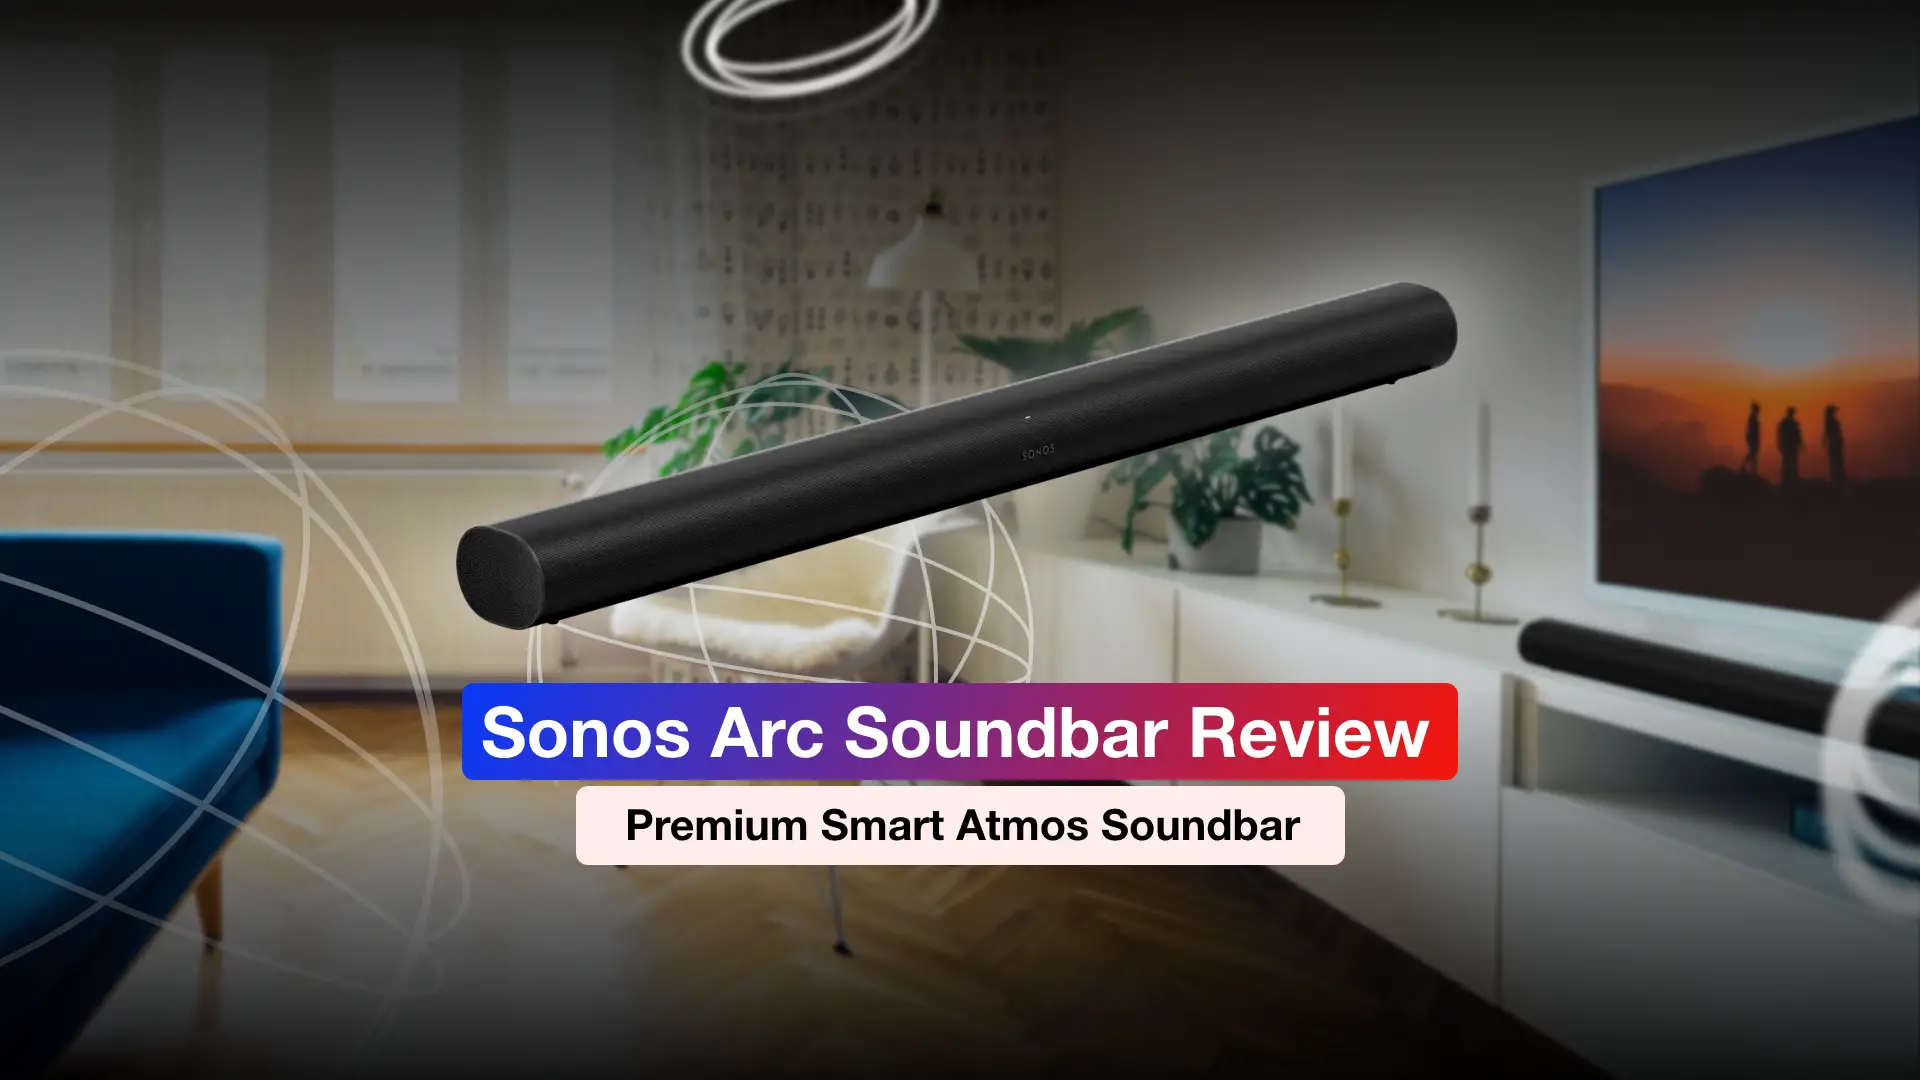 Sonos Arc Soundbar Review – Premium Smart Atmos Soundbar